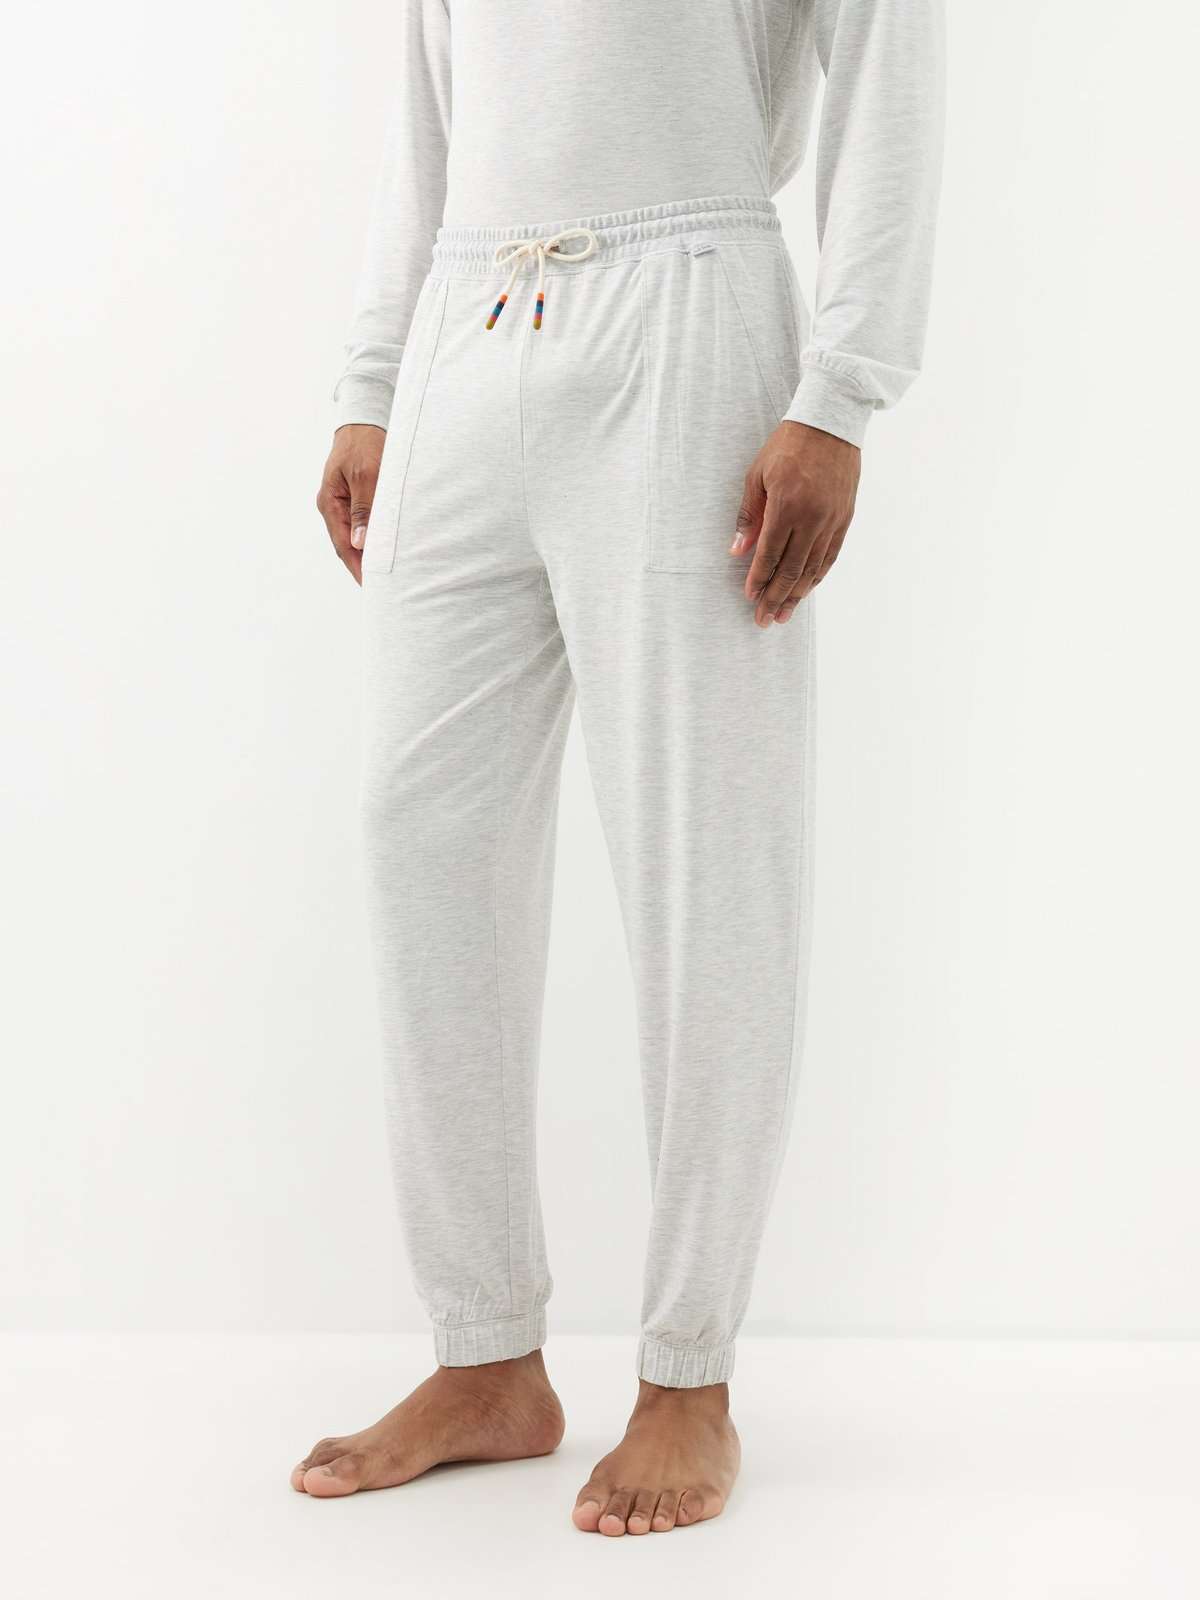 Пижамные брюки Artist с полосками на кончиках модала